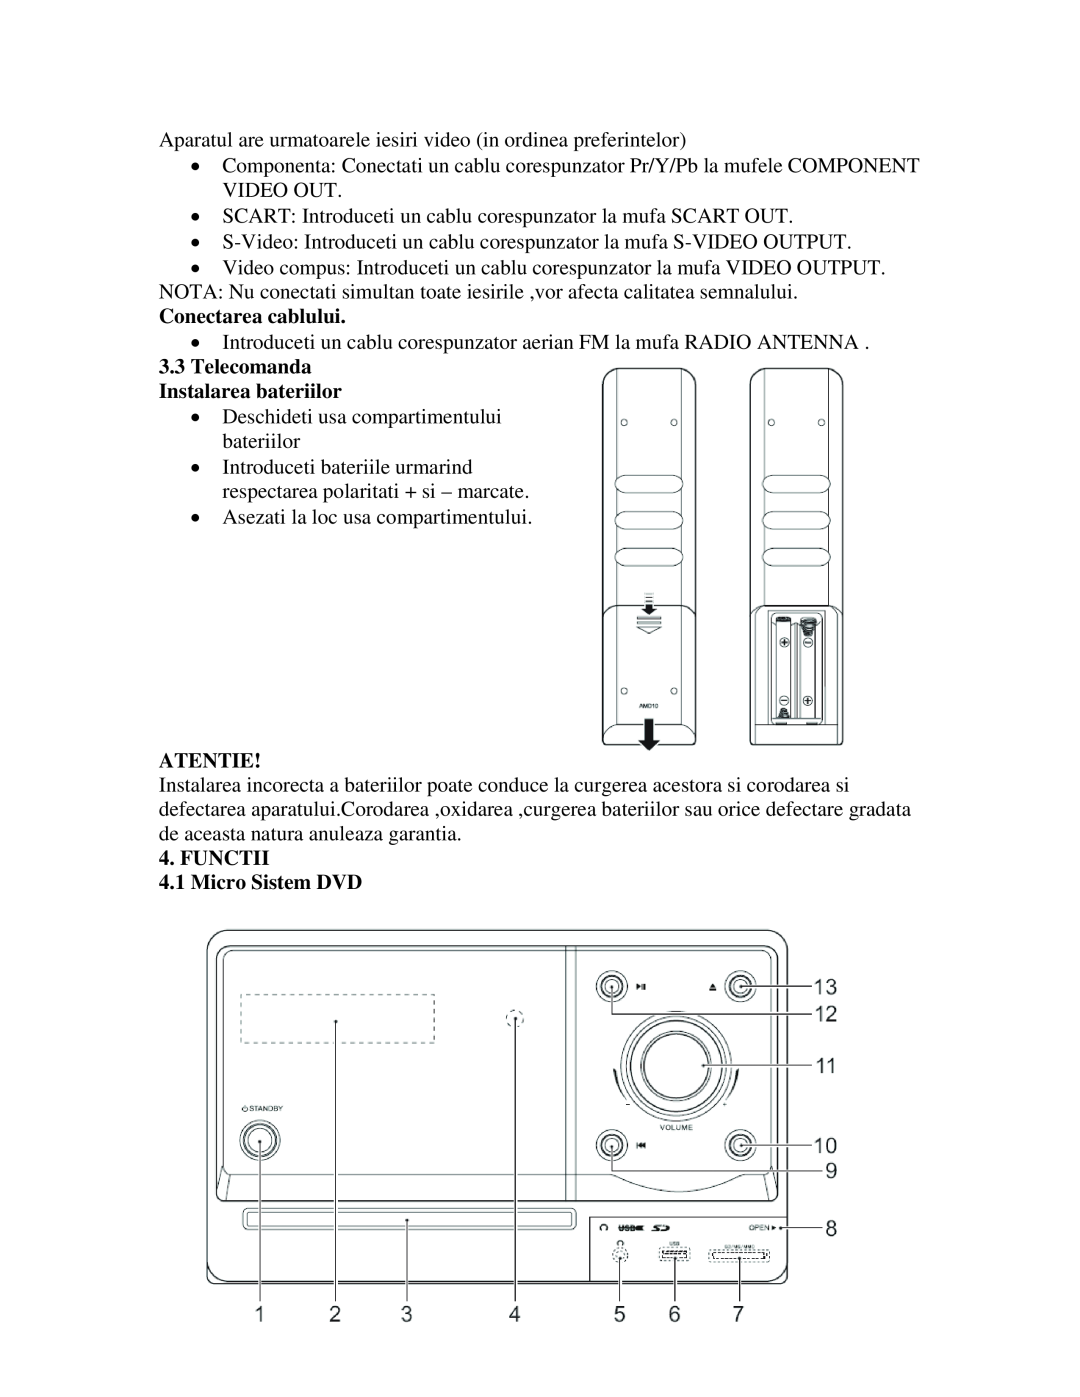 Akai AMD20 manual Conectarea cablului, 3.3Telecomanda Instalarea bateriilor, Atentie, FUNCTII 4.1 Micro Sistem DVD 